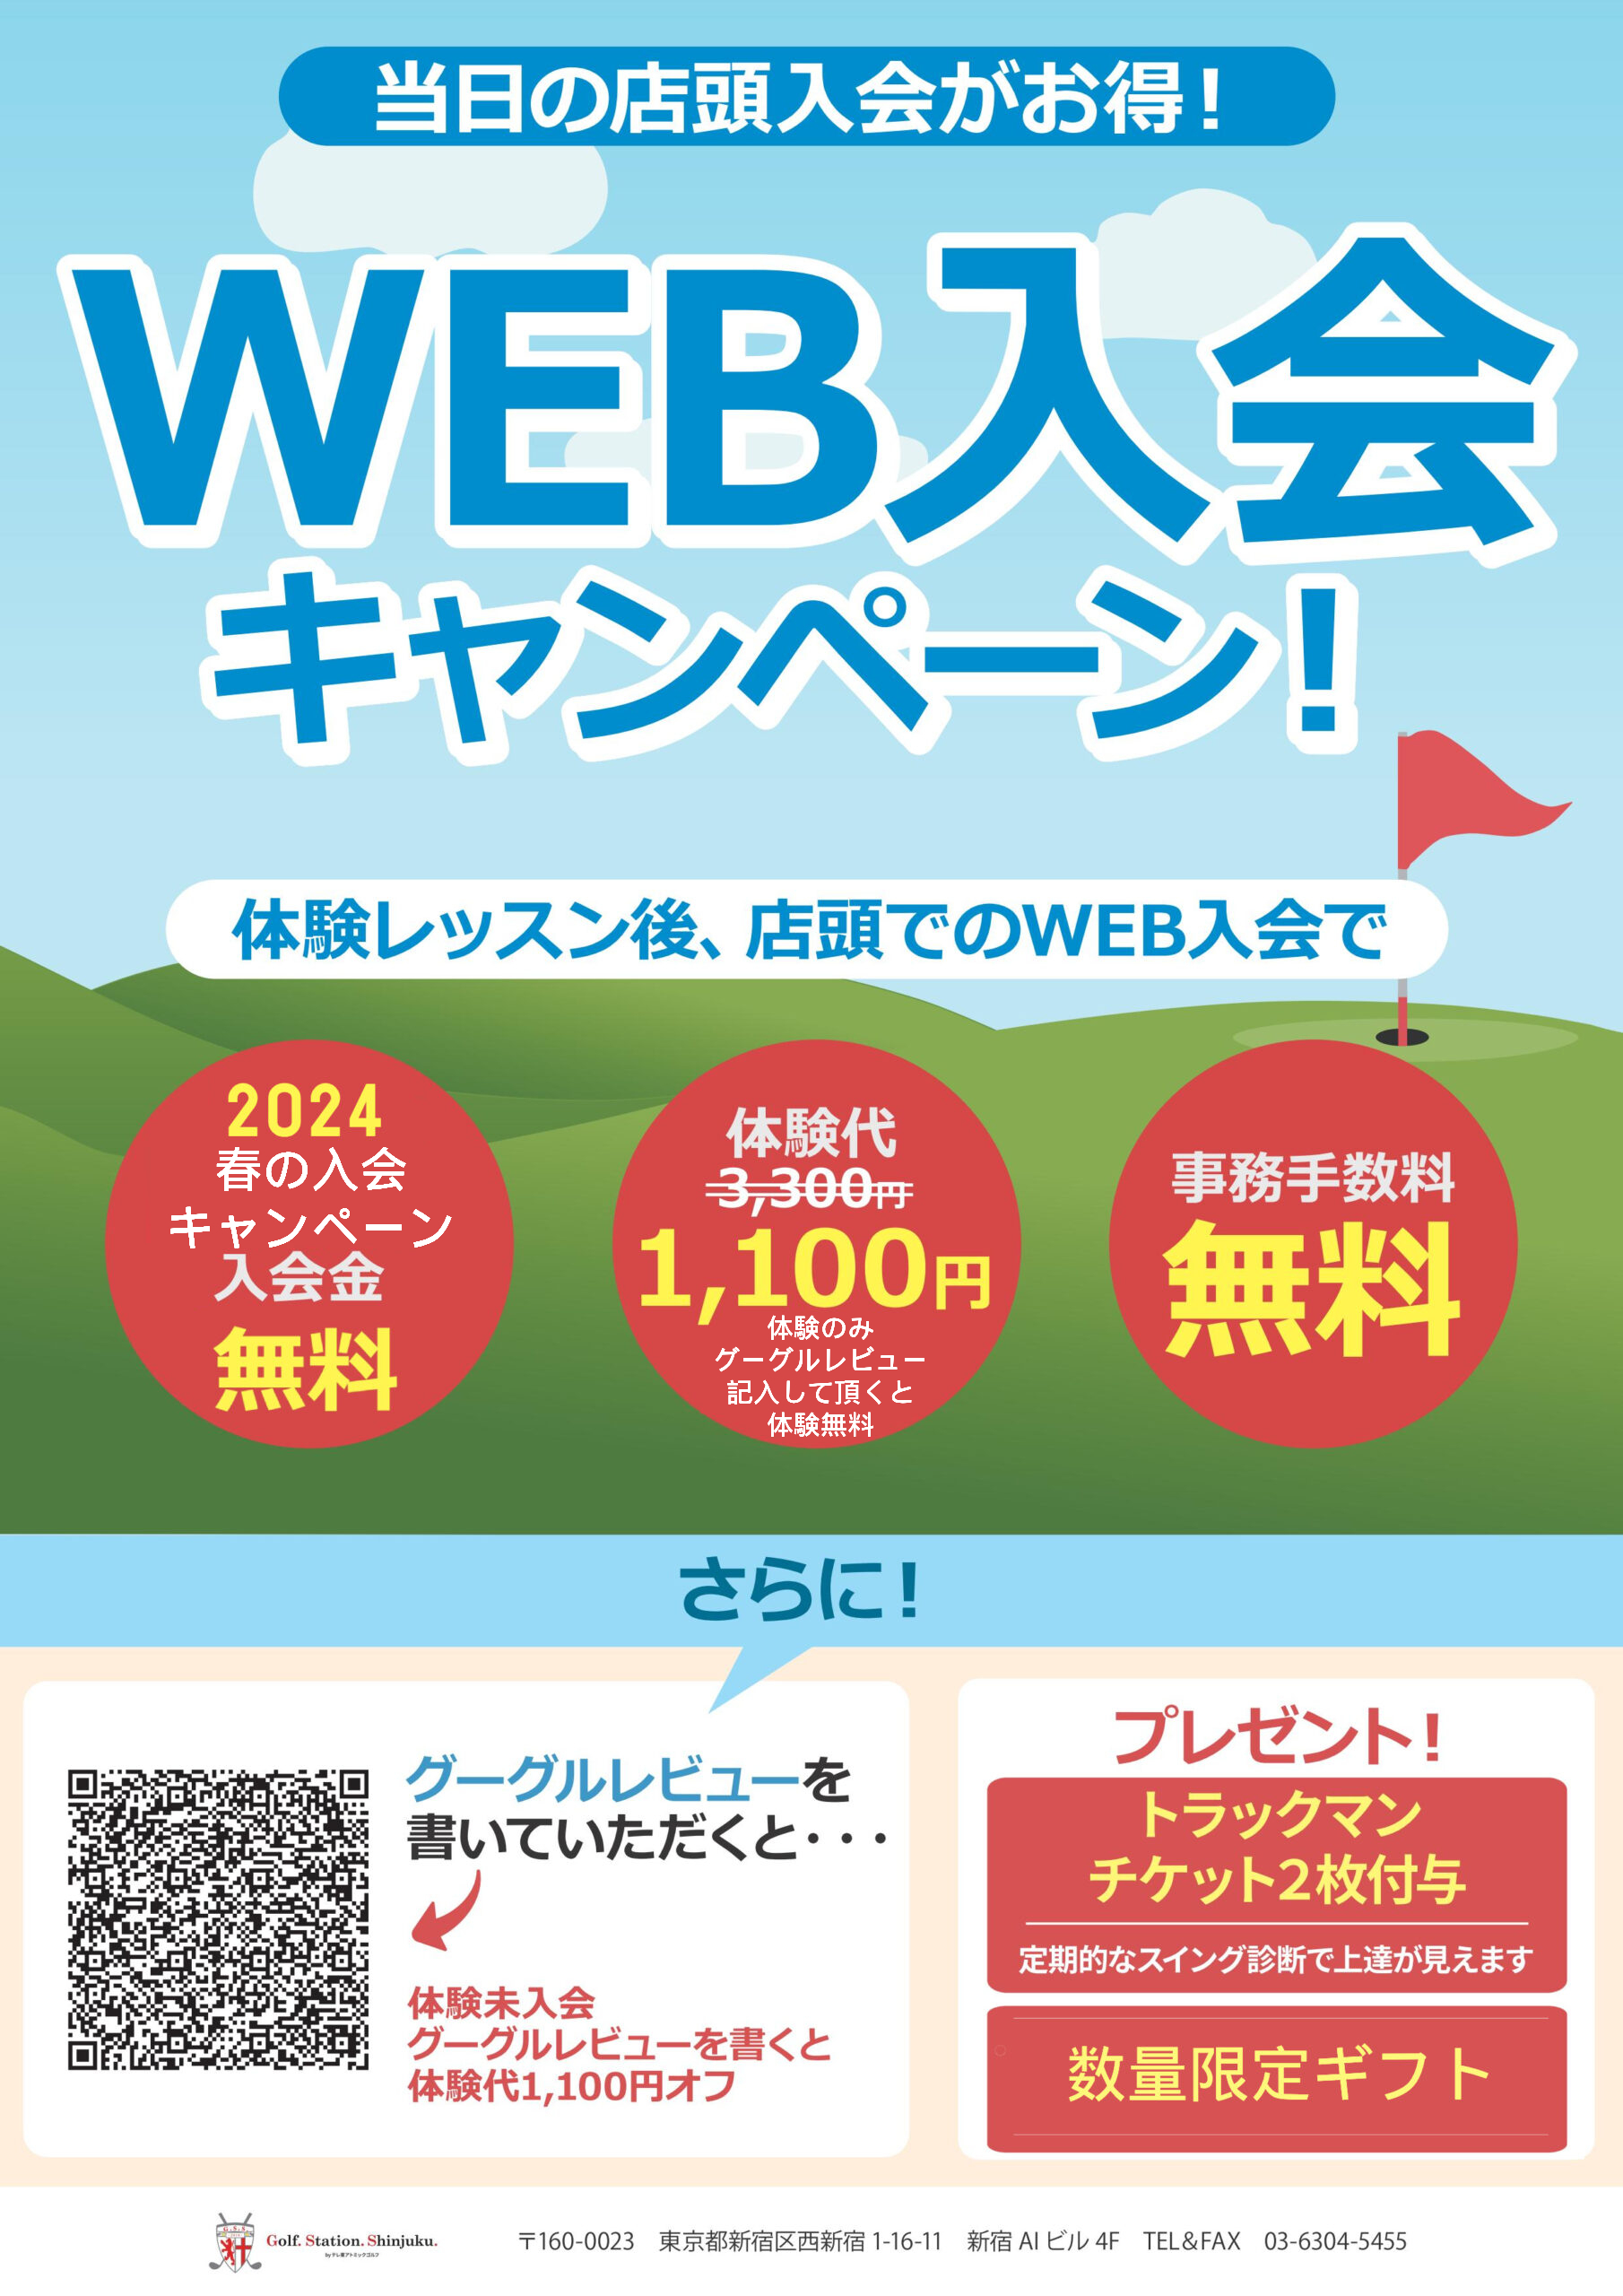 Web入会キャンペーン